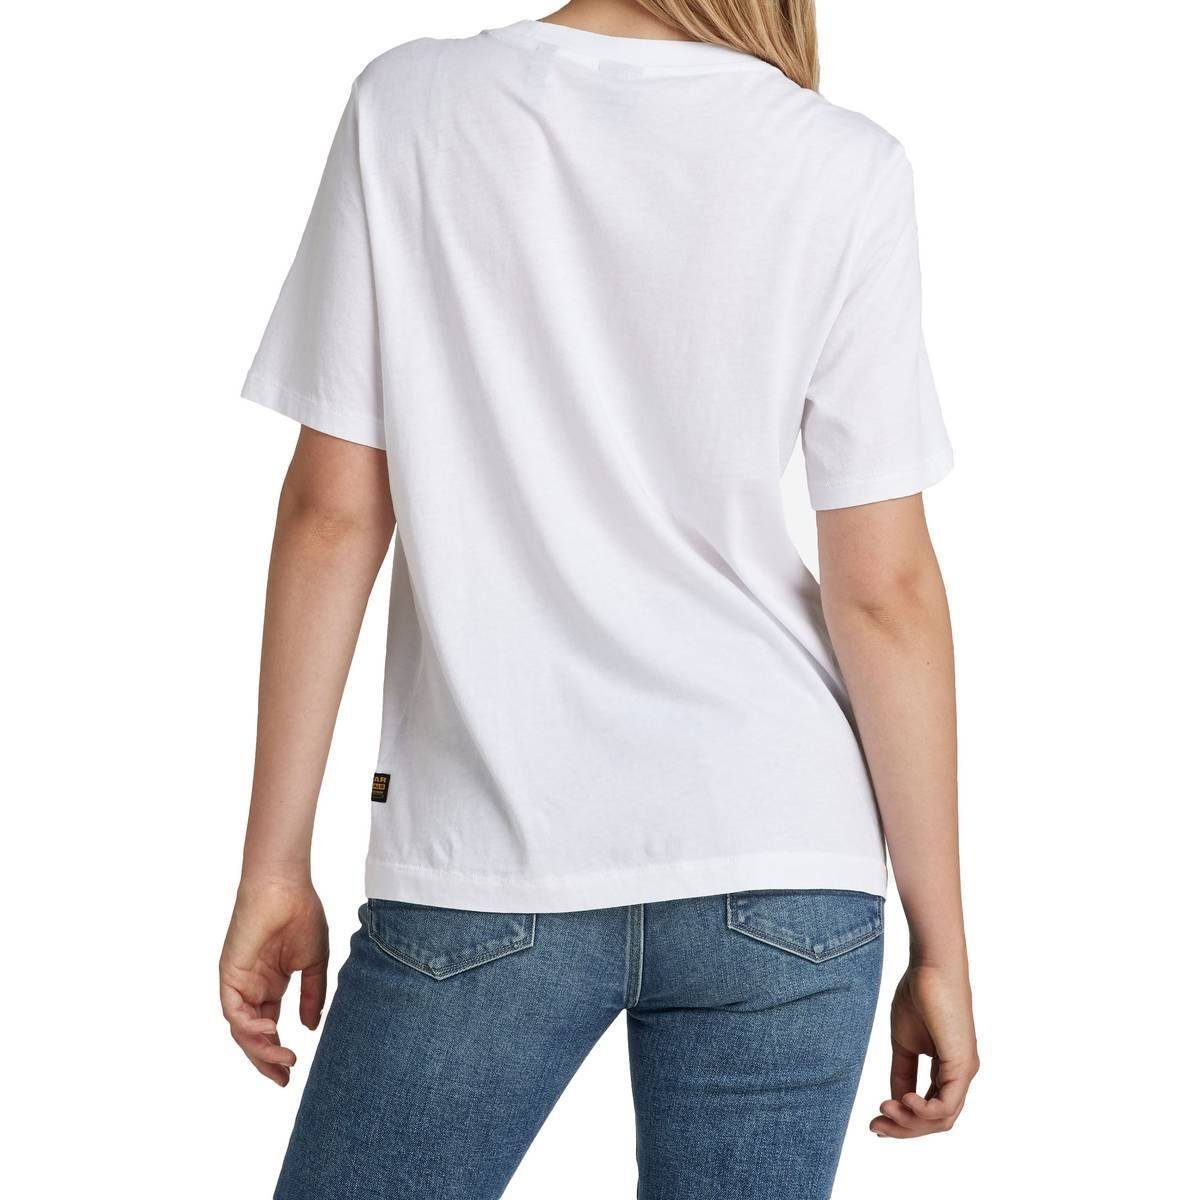 G-Star RAW T-Shirt Damen T-Shirt Fit Label Weiß Regular Originals 